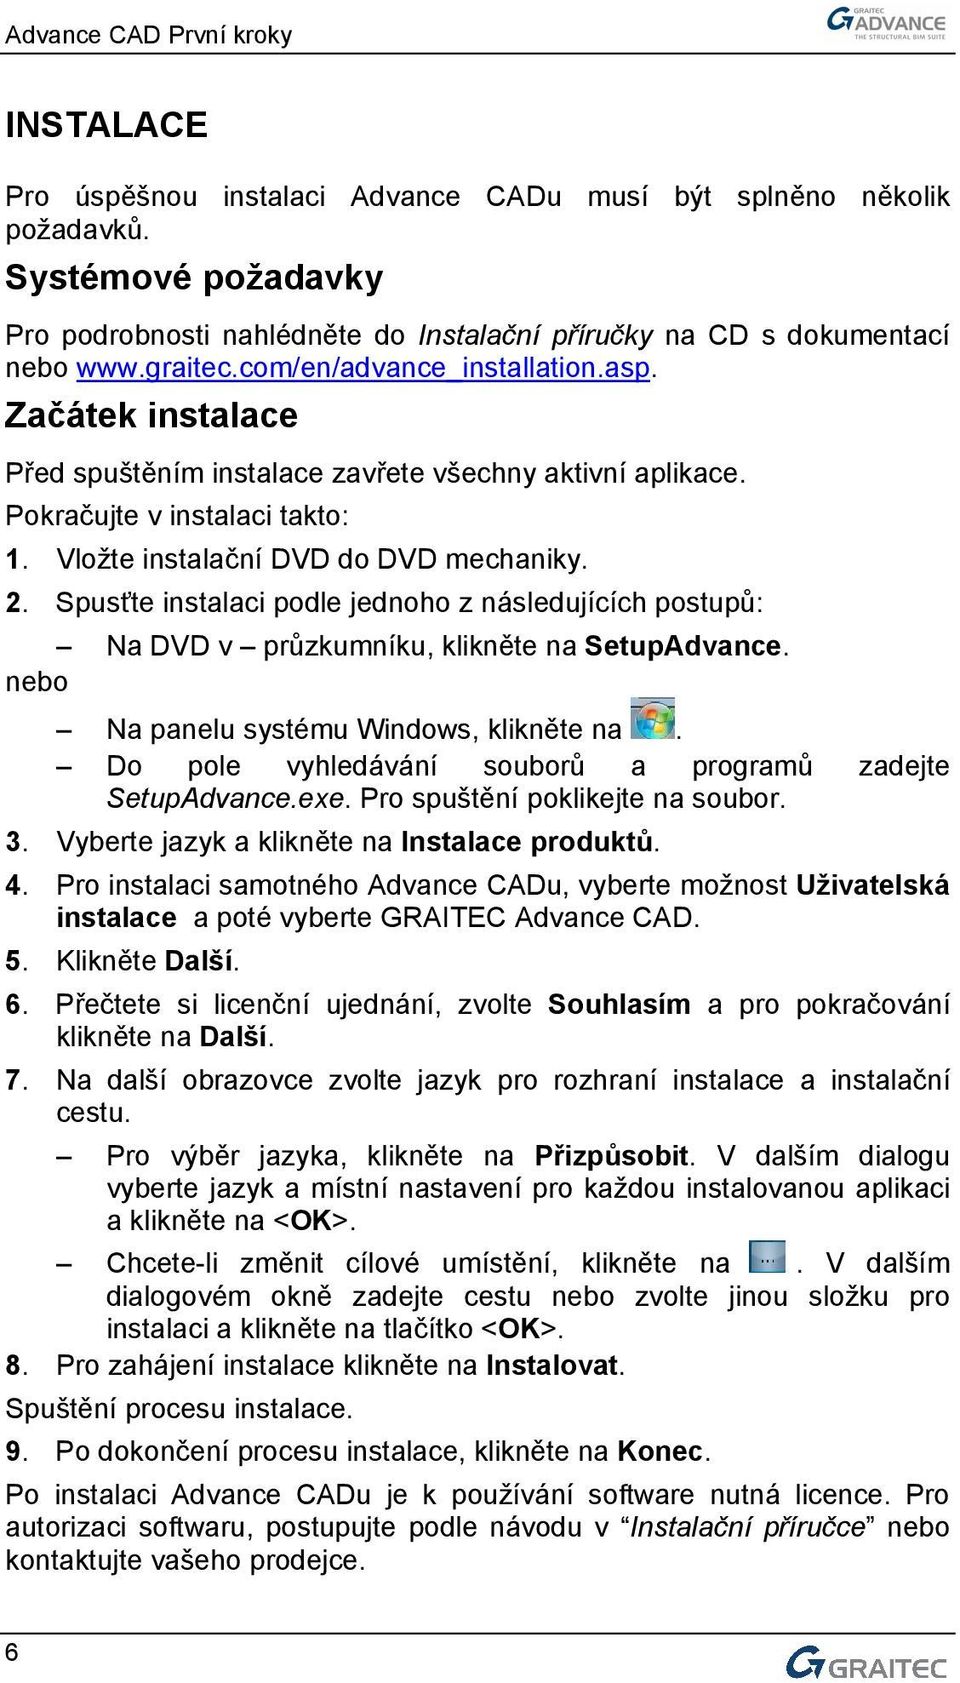 Spusťte instalaci podle jednoho z následujících postupů: Na DVD v průzkumníku, klikněte na SetupAdvance. nebo Na panelu systému Windows, klikněte na.